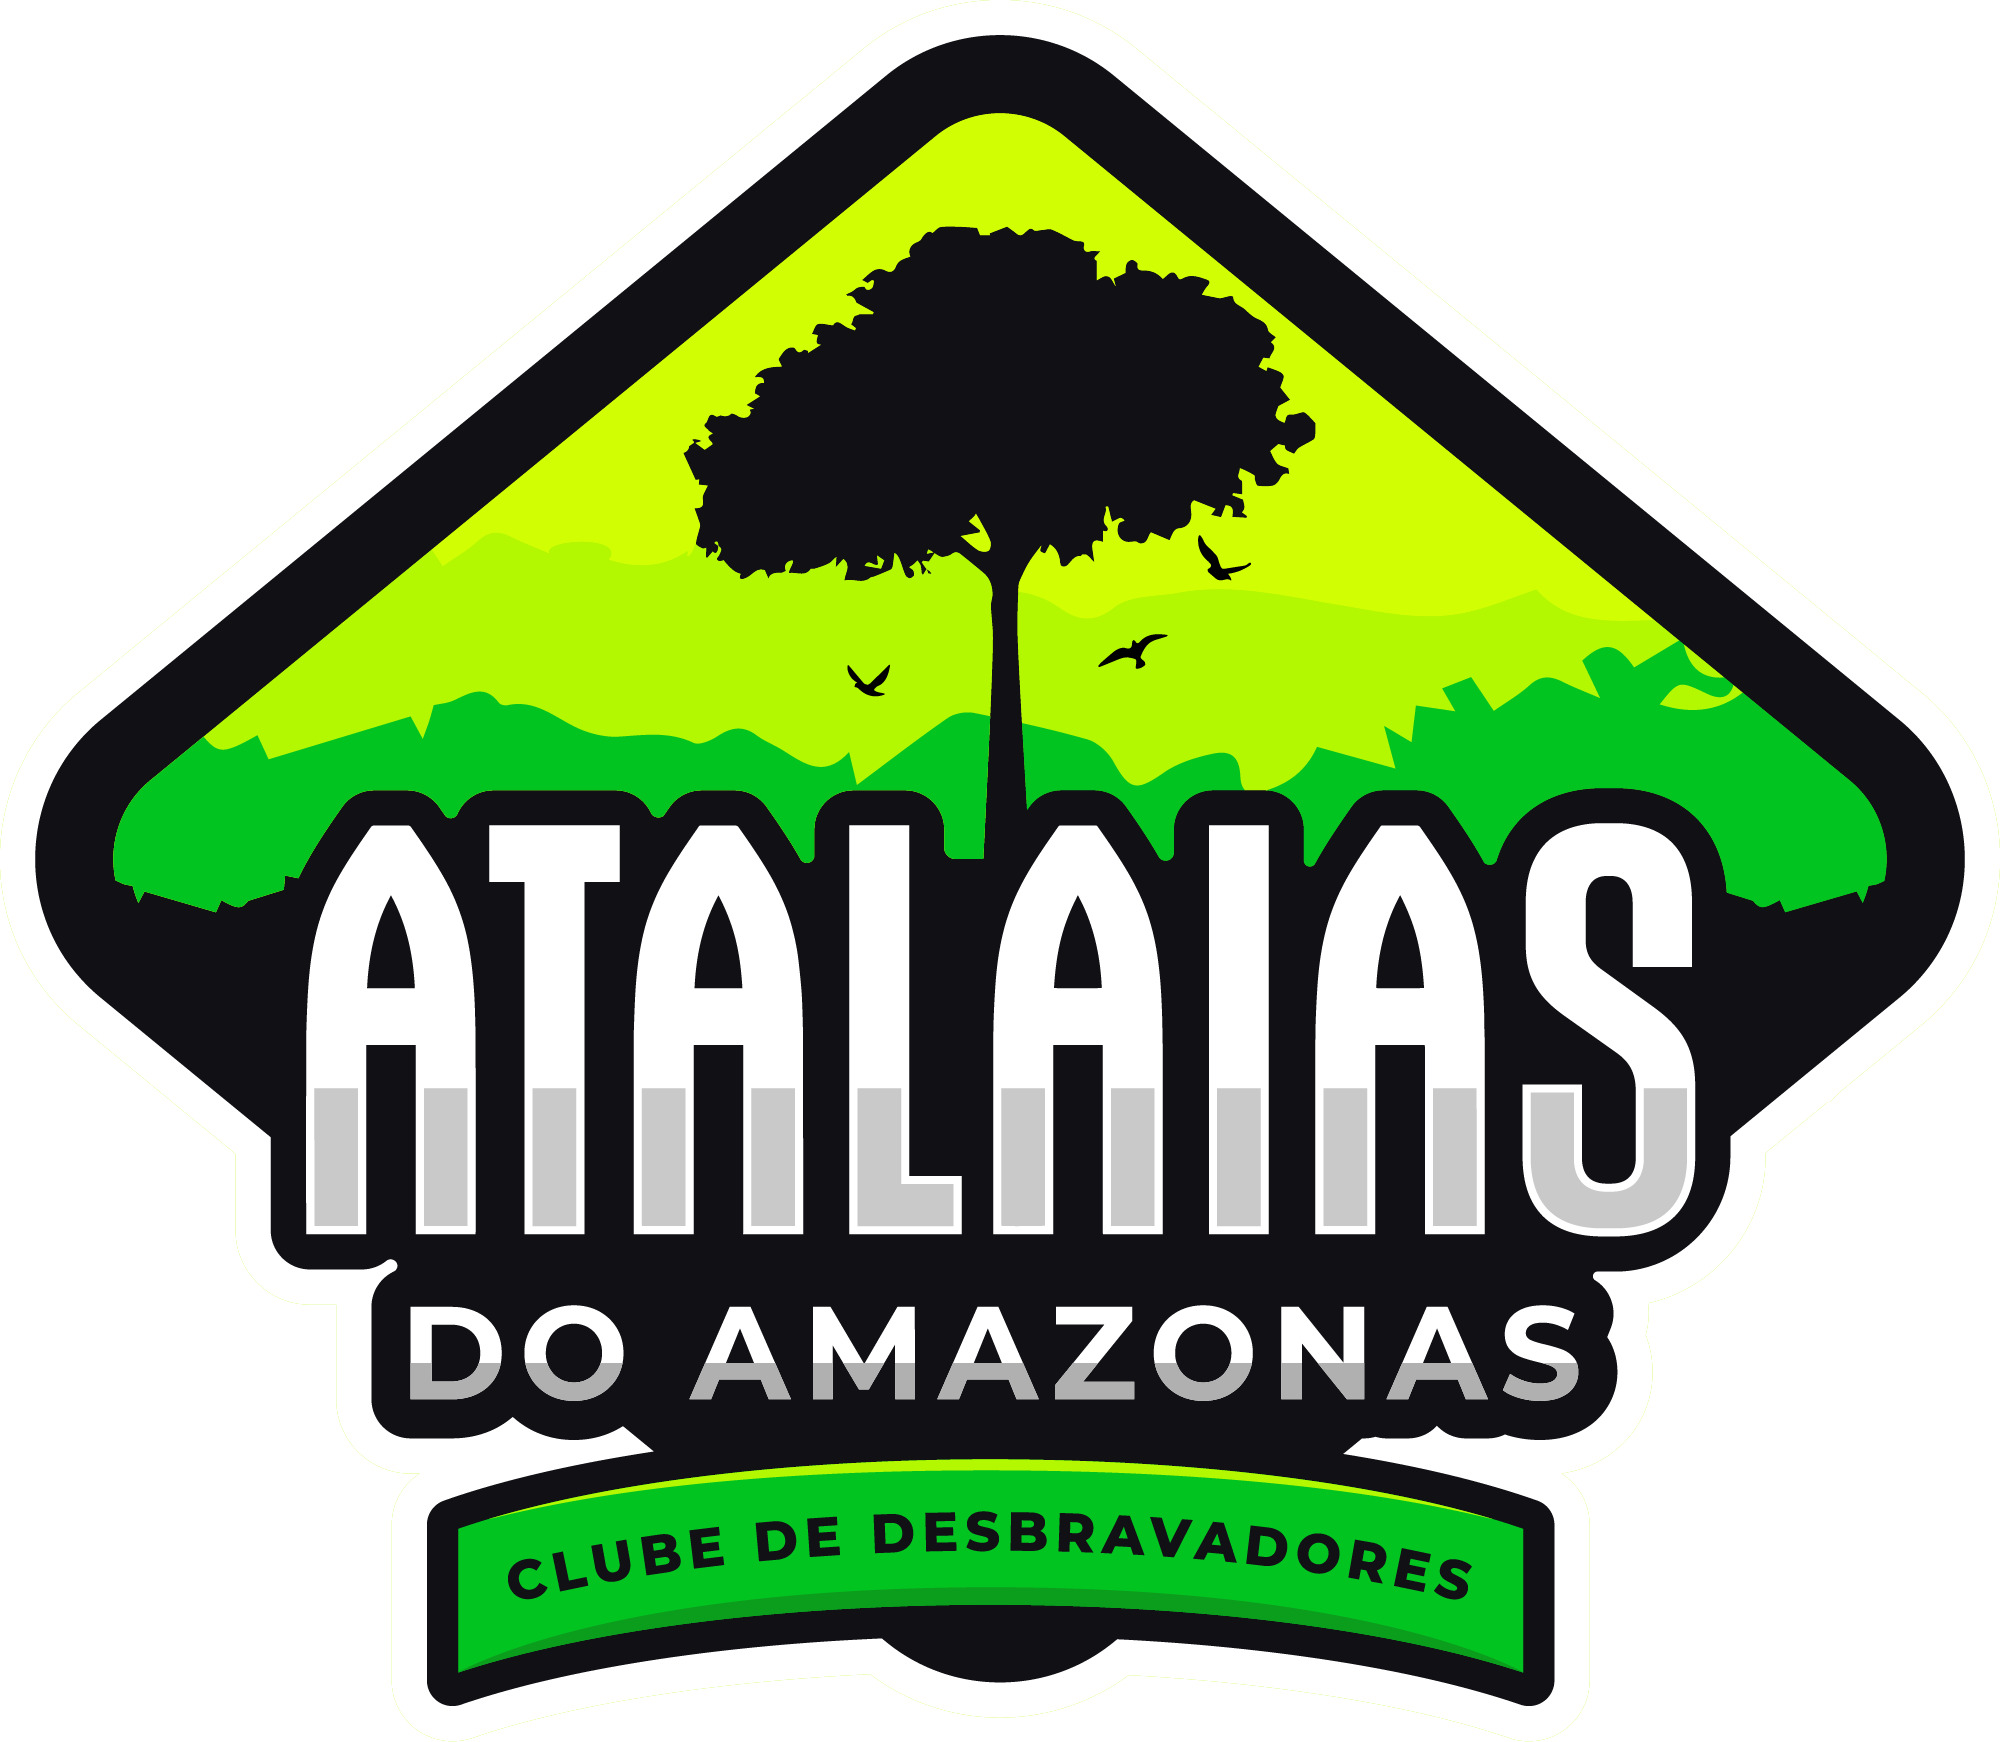 Atalaias do Amazonas